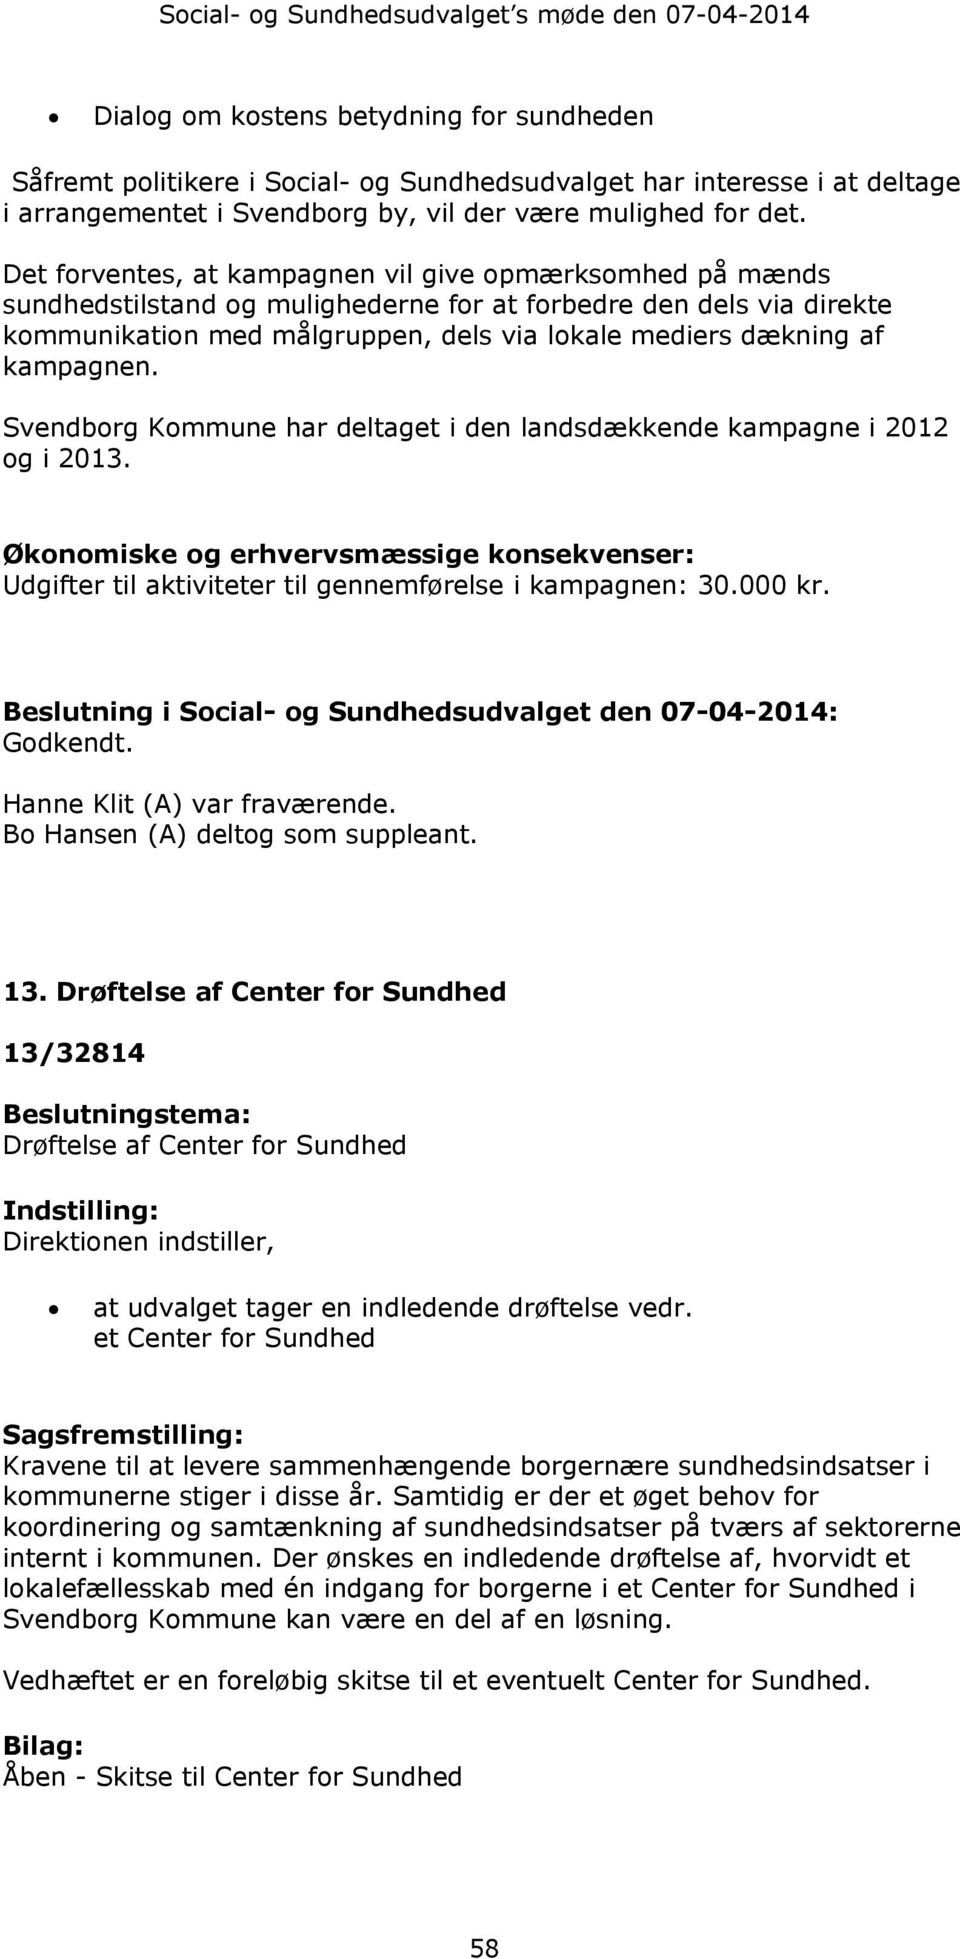 kampagnen. Svendborg Kommune har deltaget i den landsdækkende kampagne i 2012 og i 2013. Økonomiske og erhvervsmæssige konsekvenser: Udgifter til aktiviteter til gennemførelse i kampagnen: 30.000 kr.